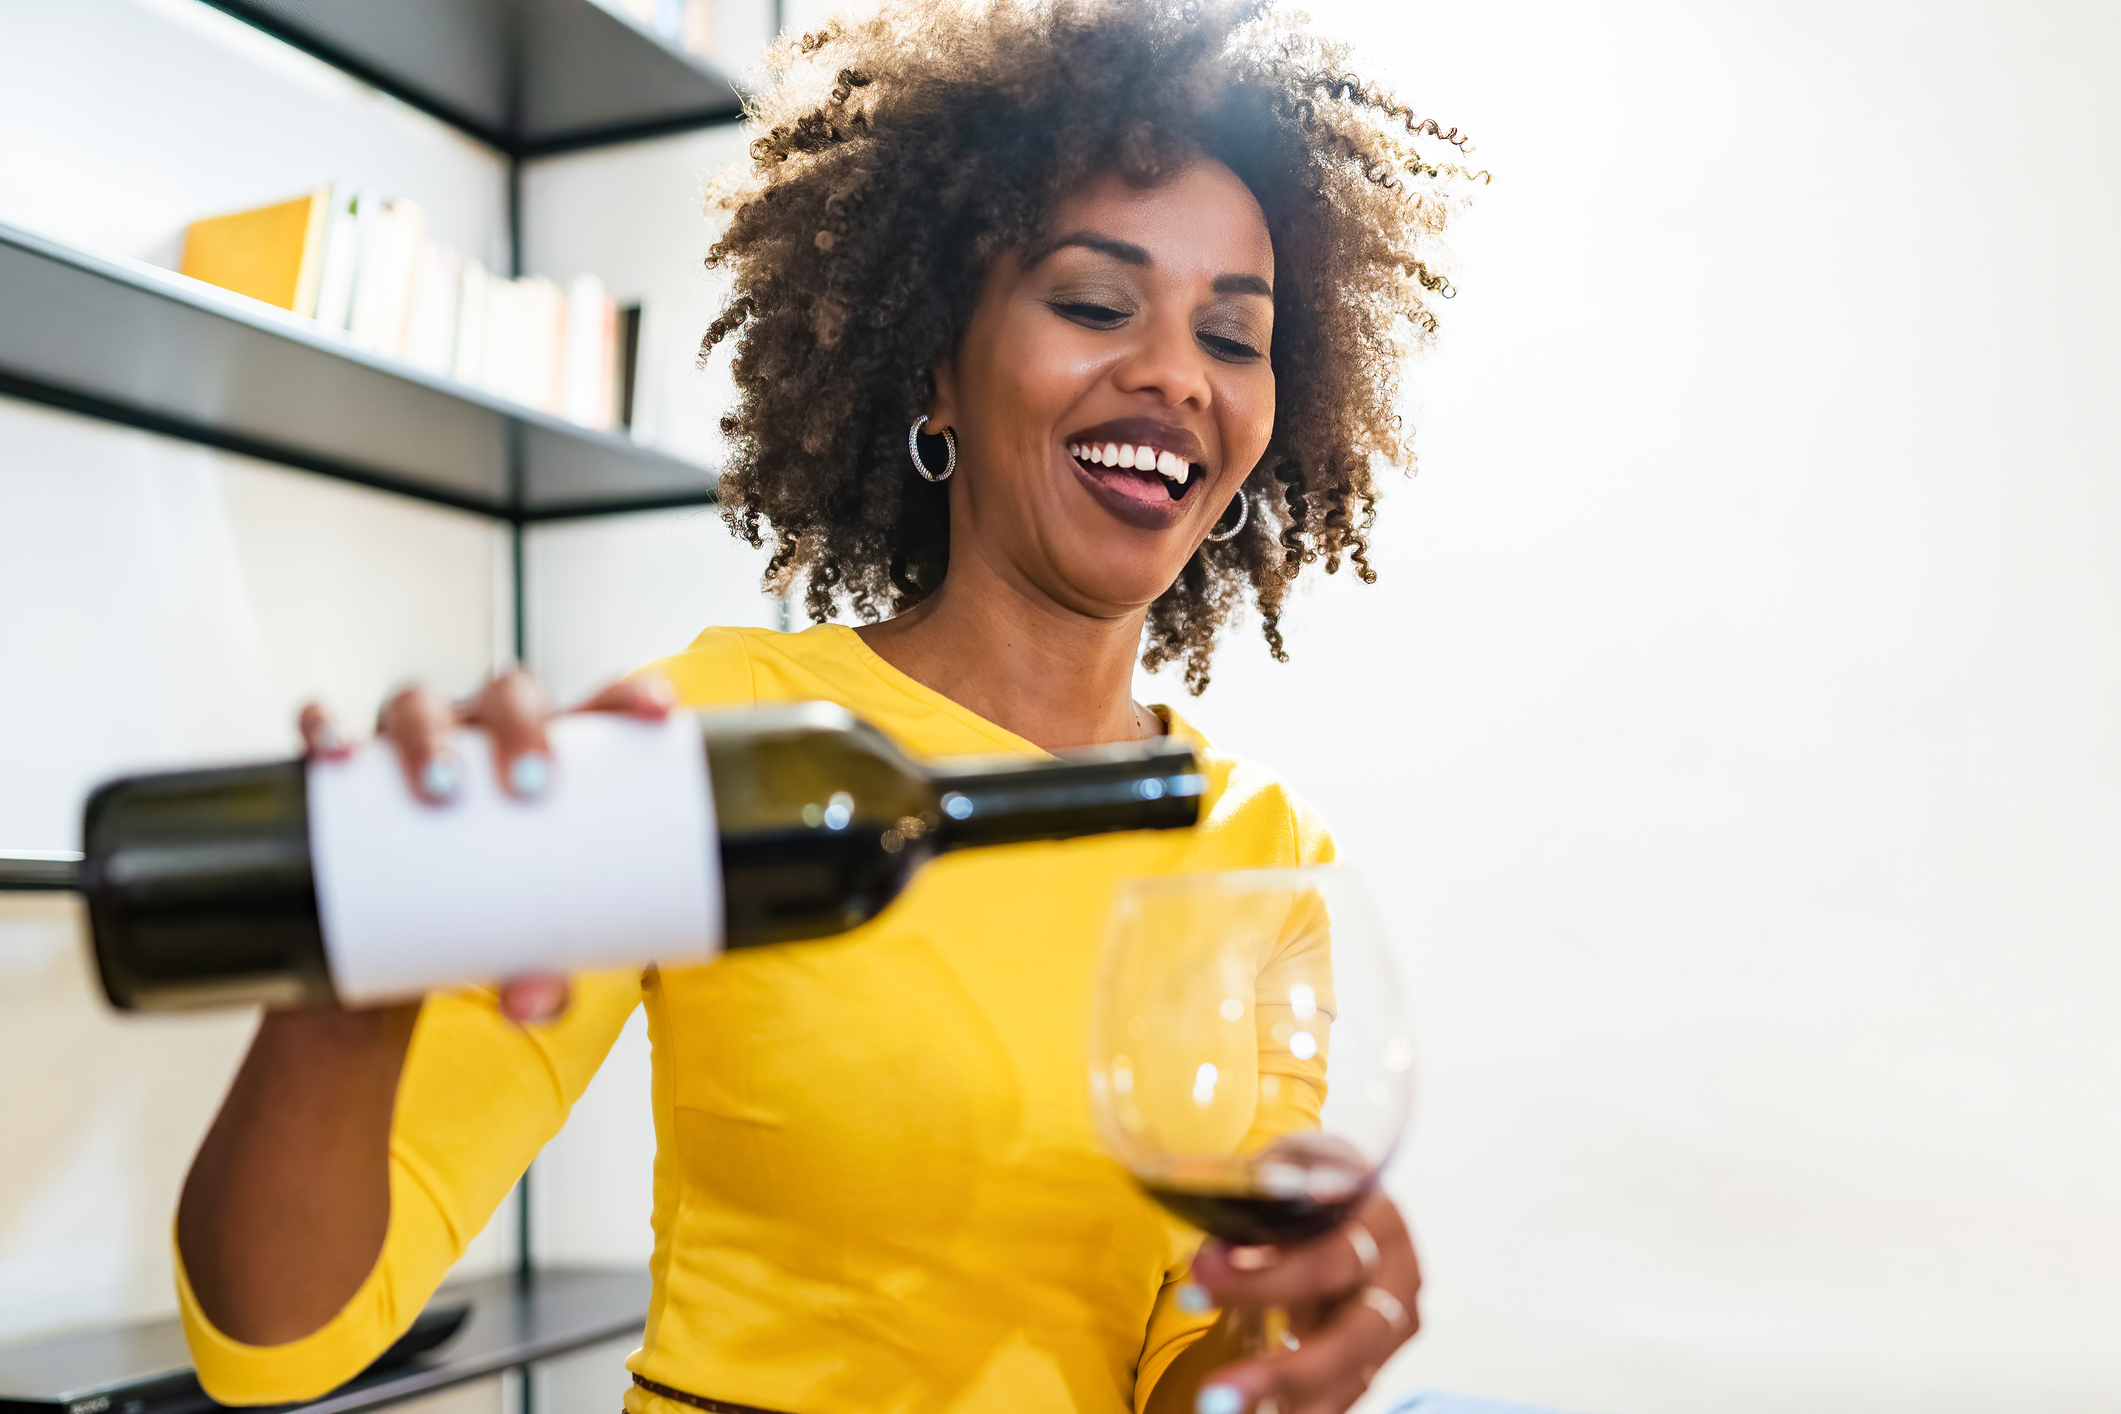 Tomar una copa de vino todos los día puede tener beneficios en la salud cardiovascular gracias a sus antioxidantes.